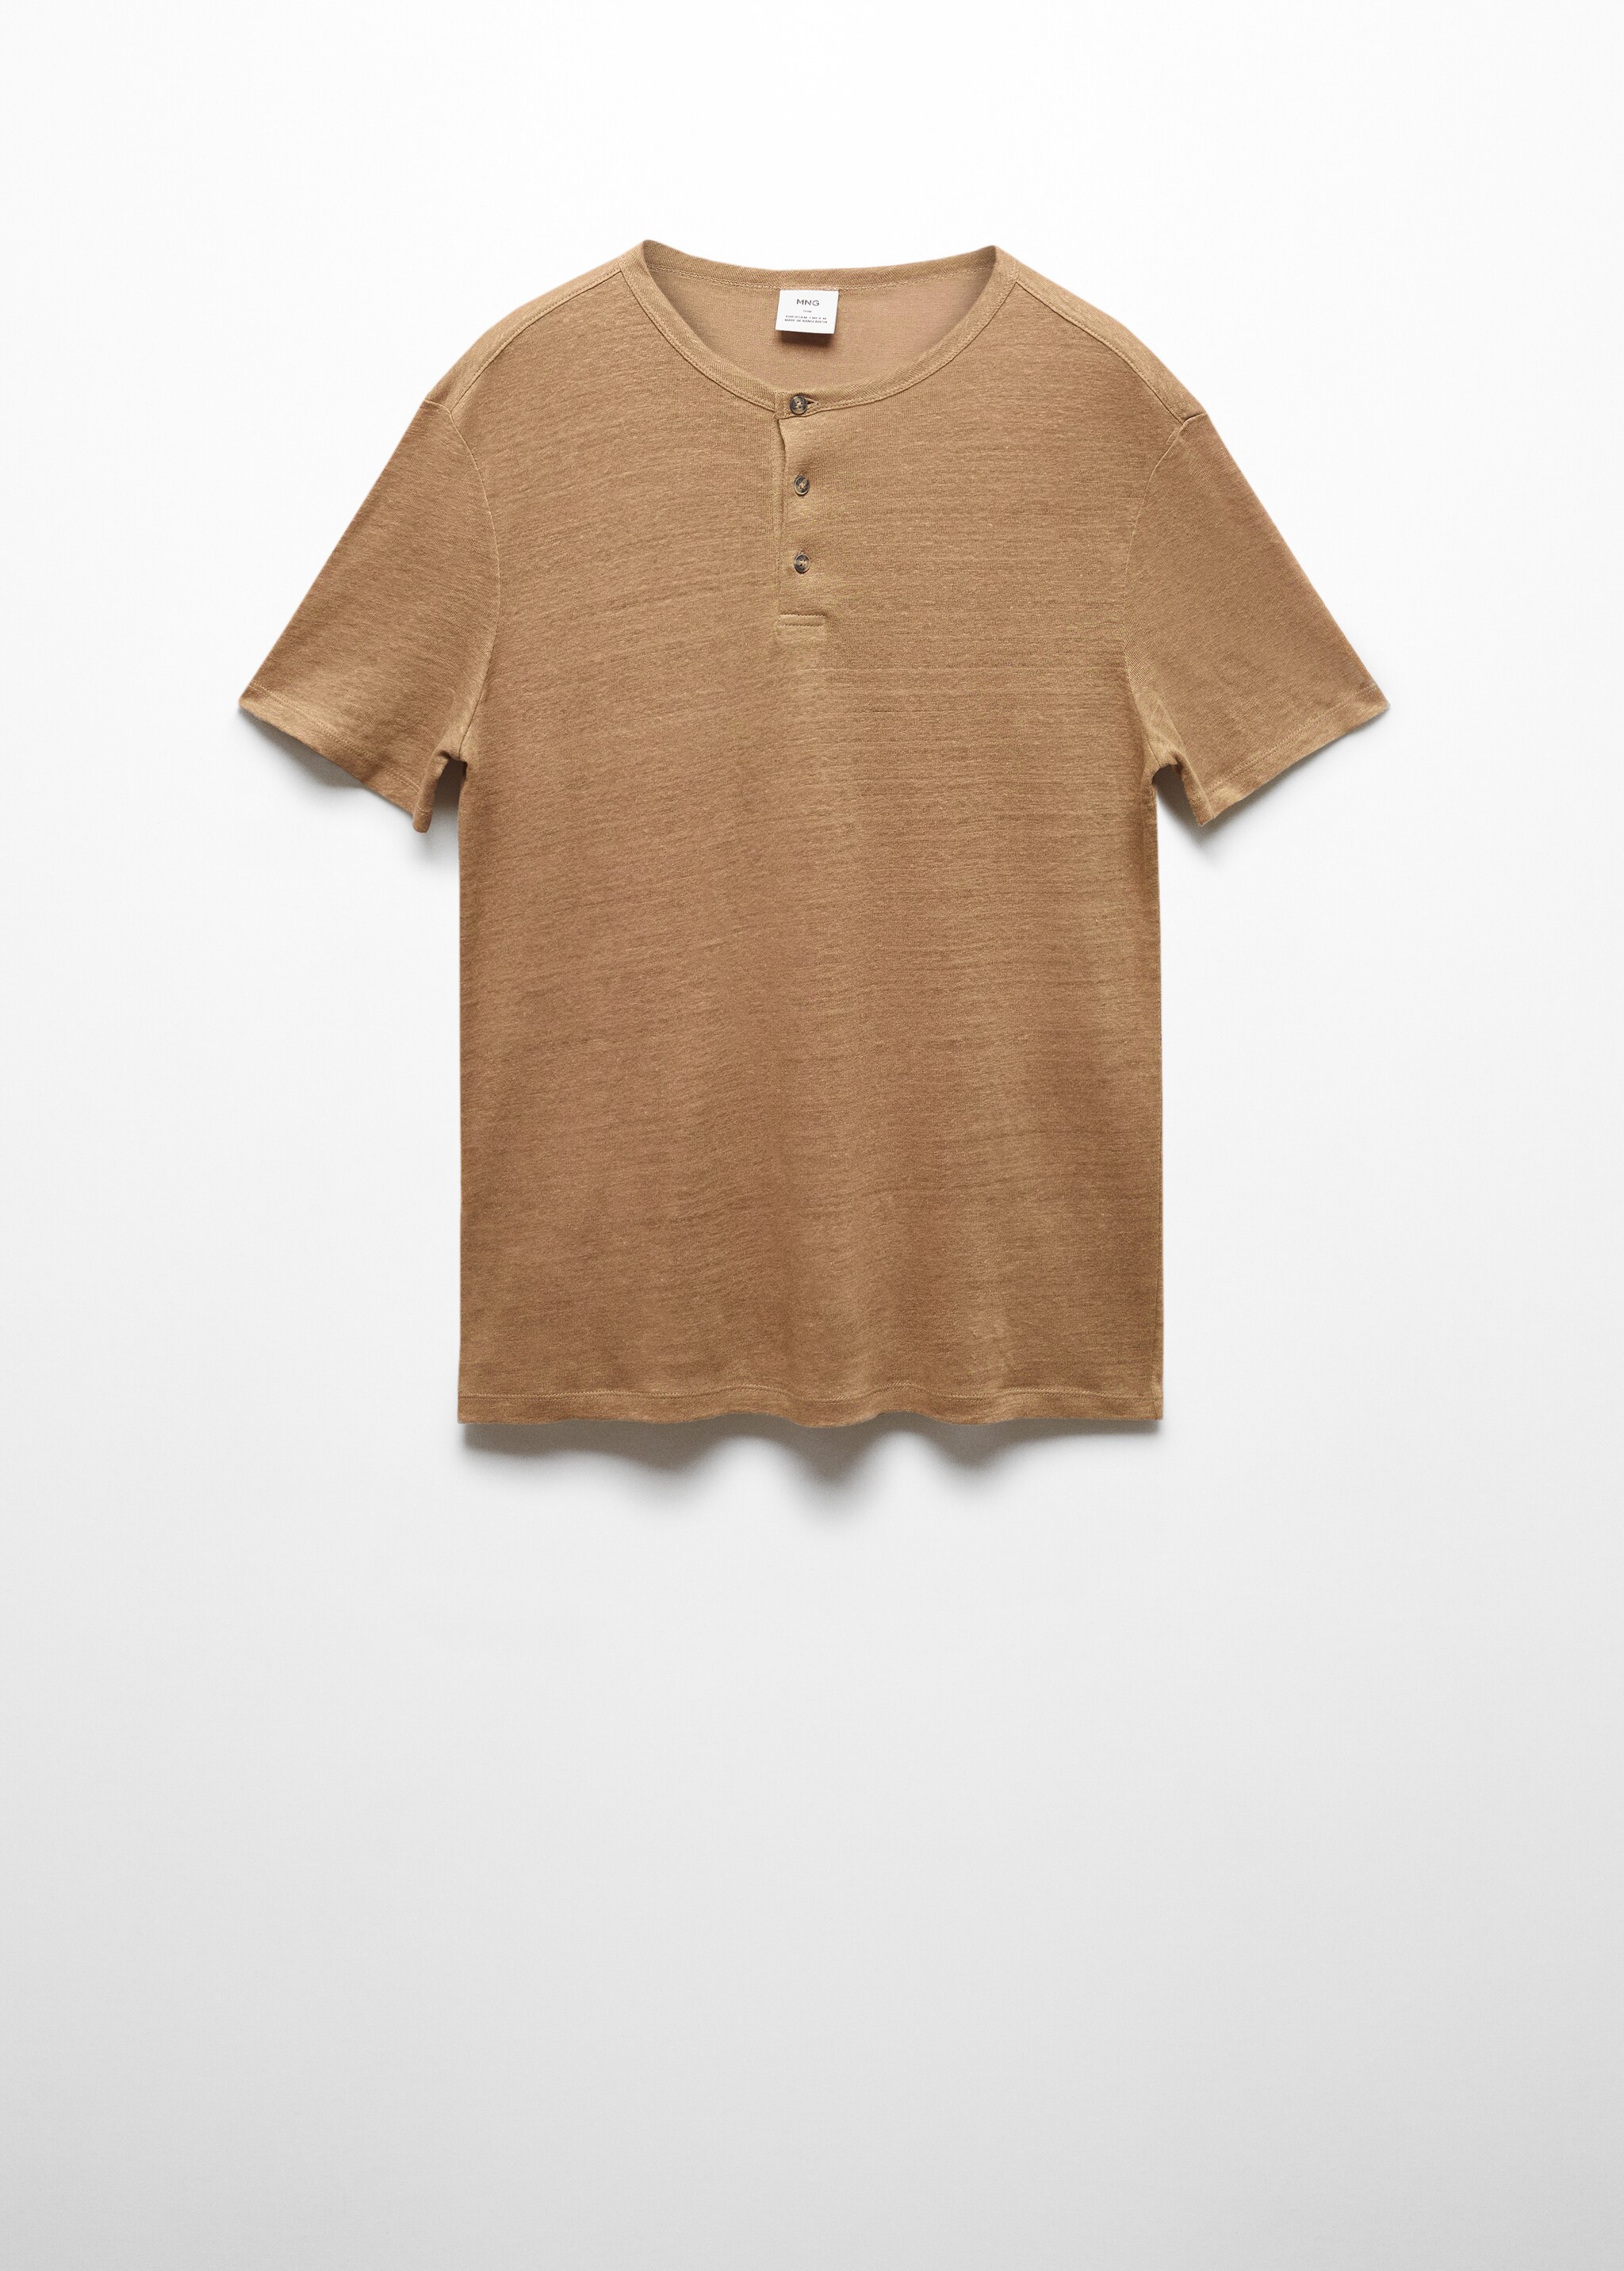 Camiseta slim fit 100% lino - Artículo sin modelo